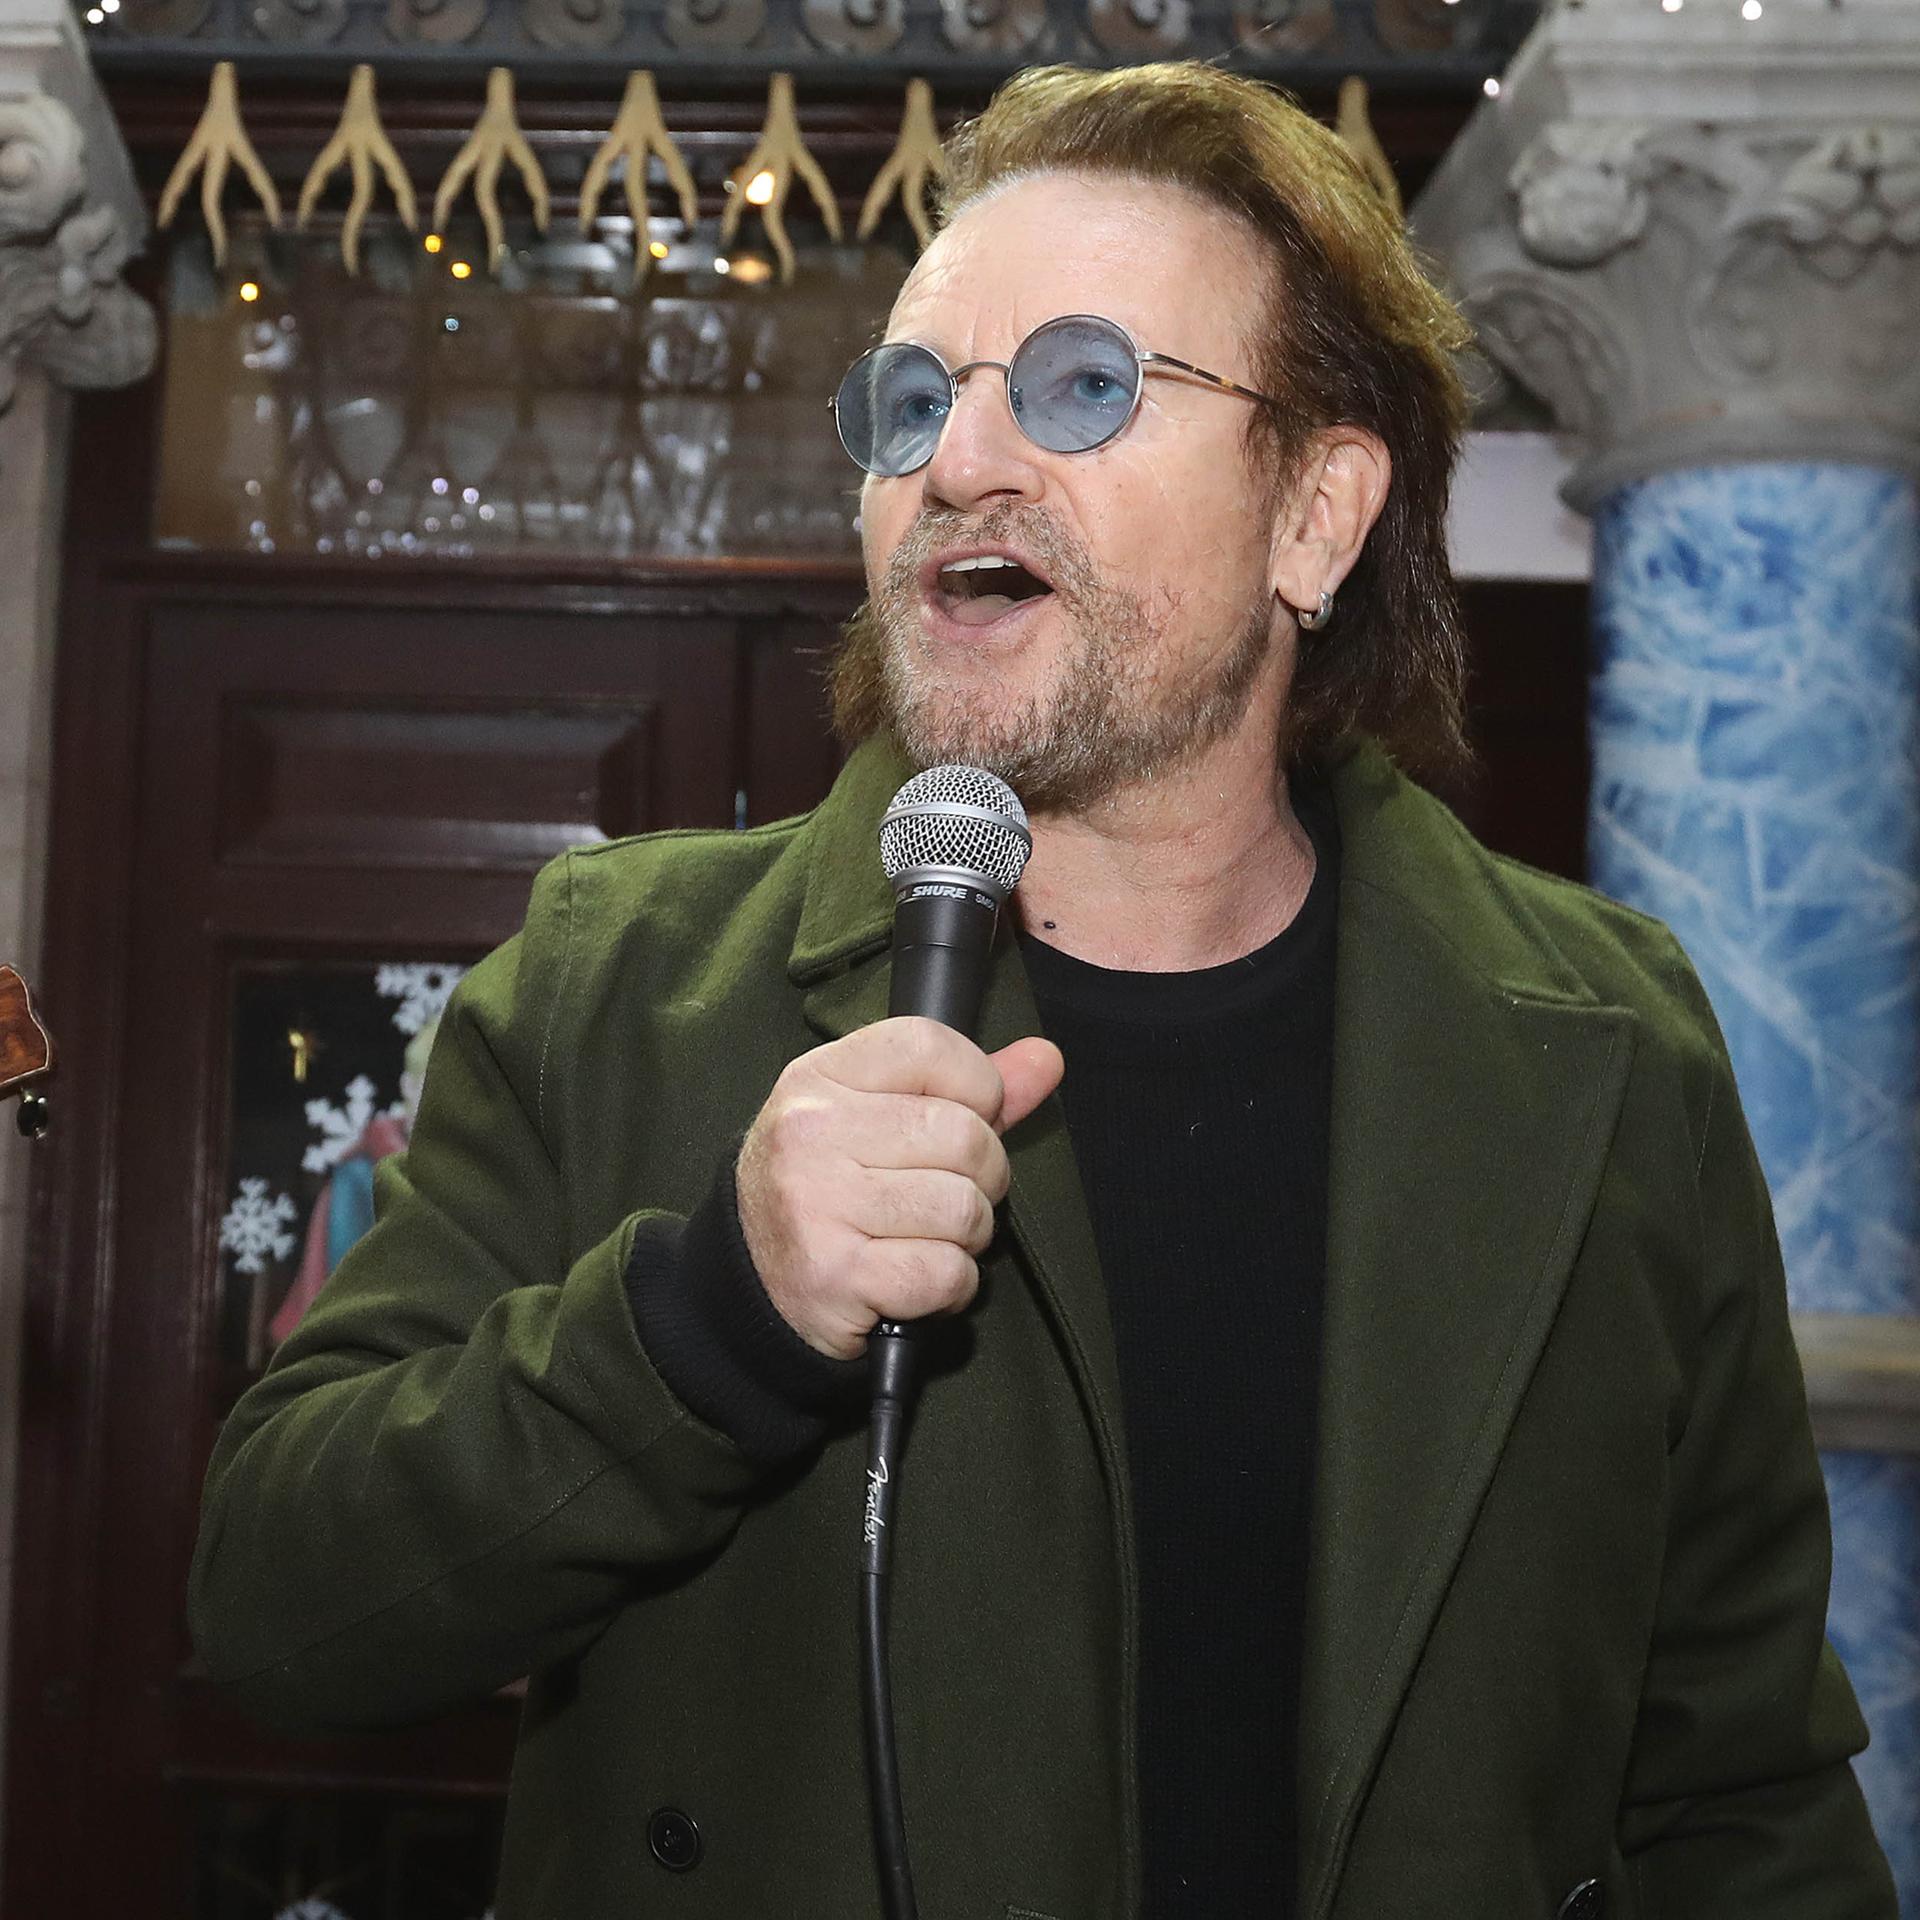 Bonos Autobiografie - Szenen einer Erfolgsgeschichte